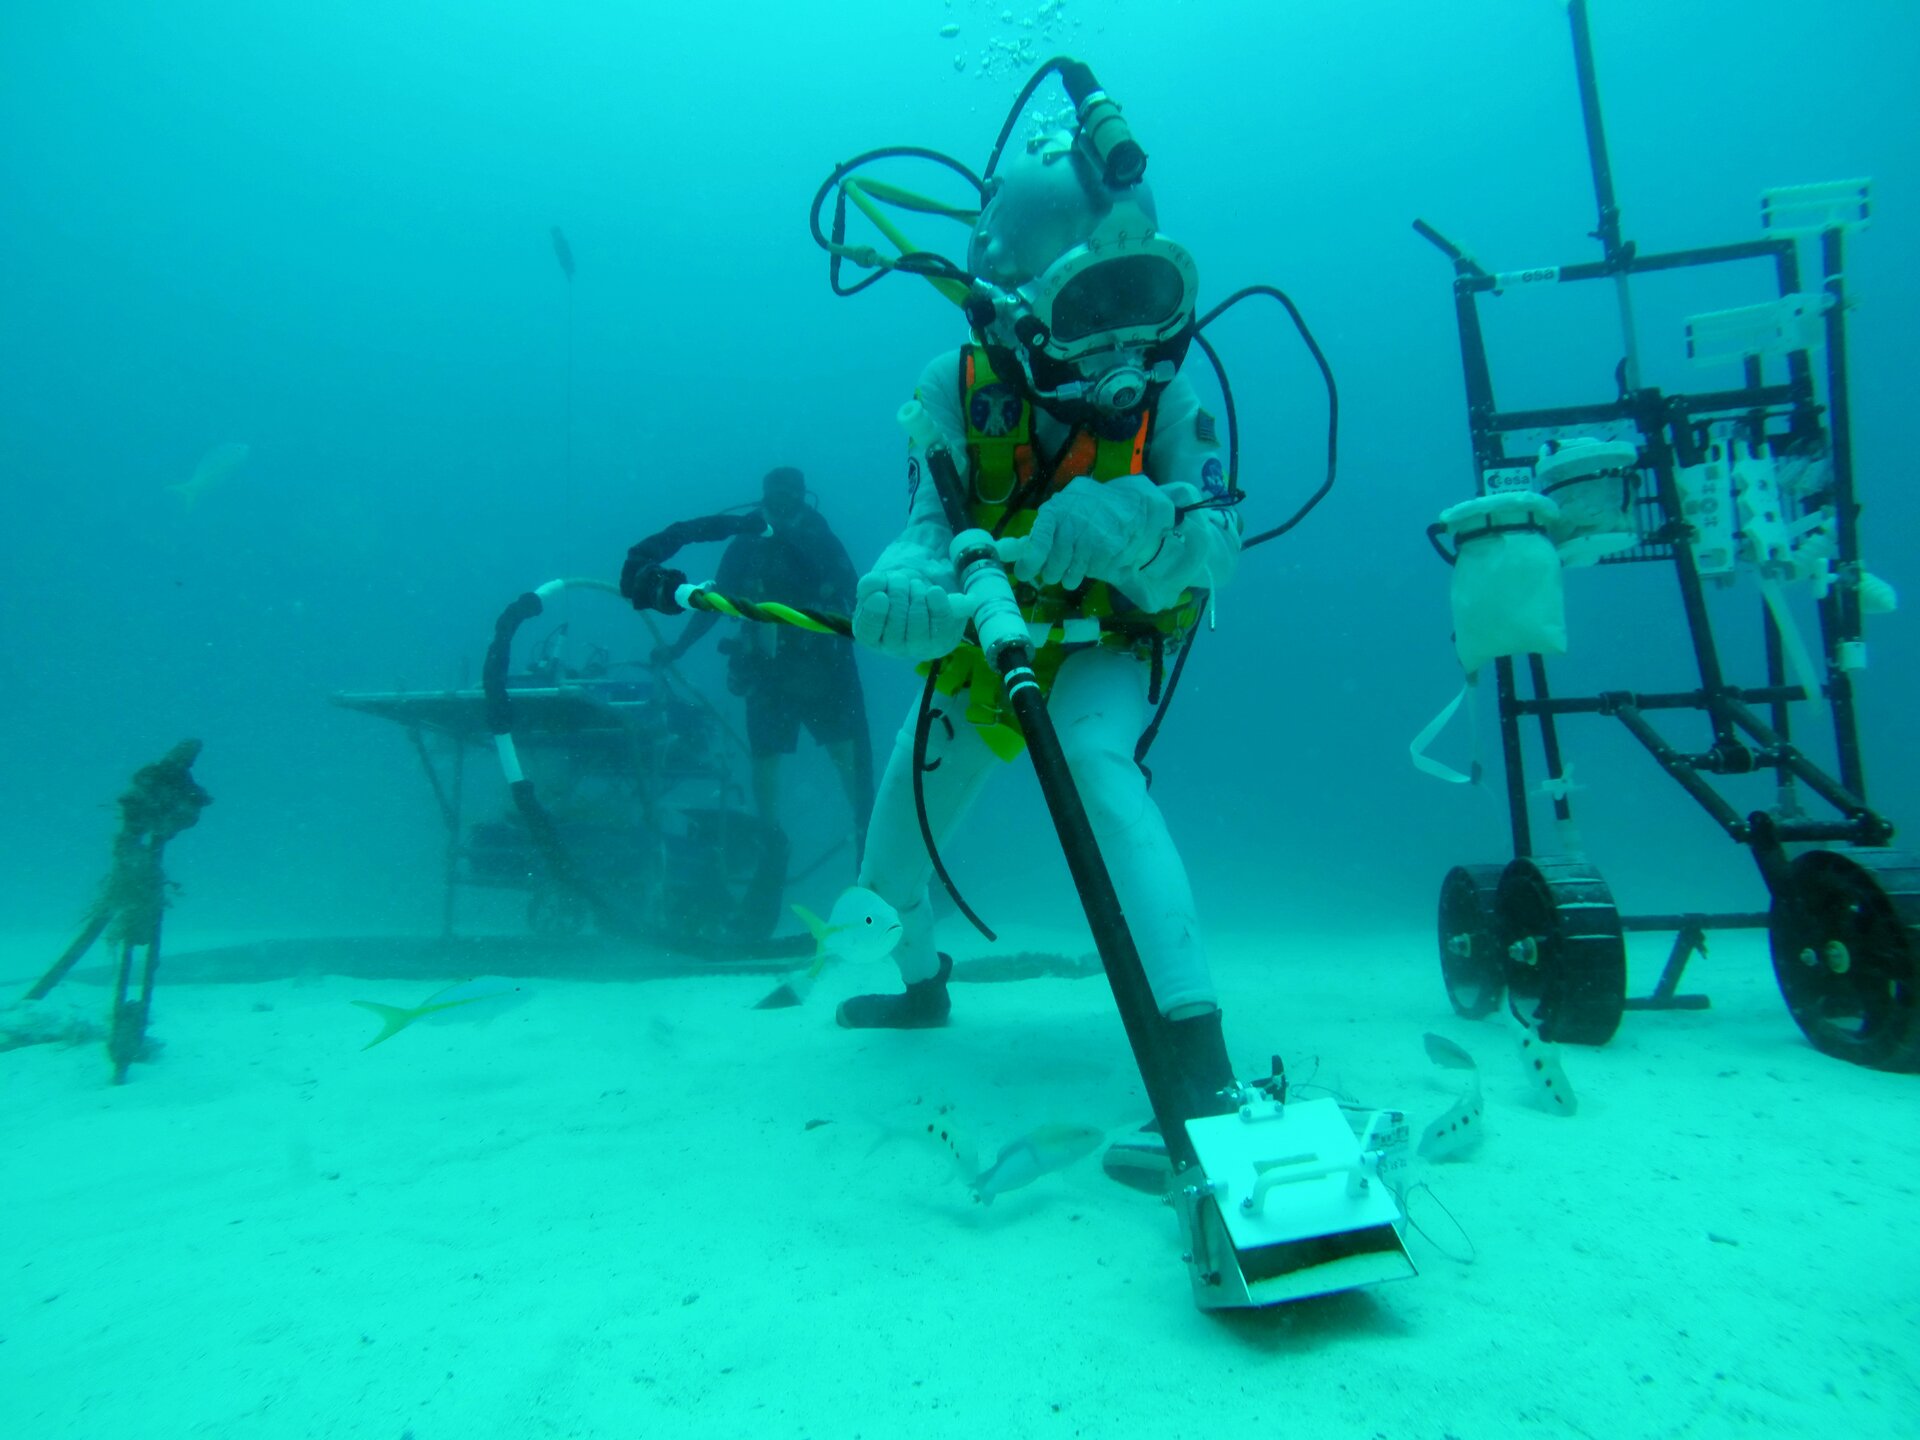 Testing lunar tools underwater